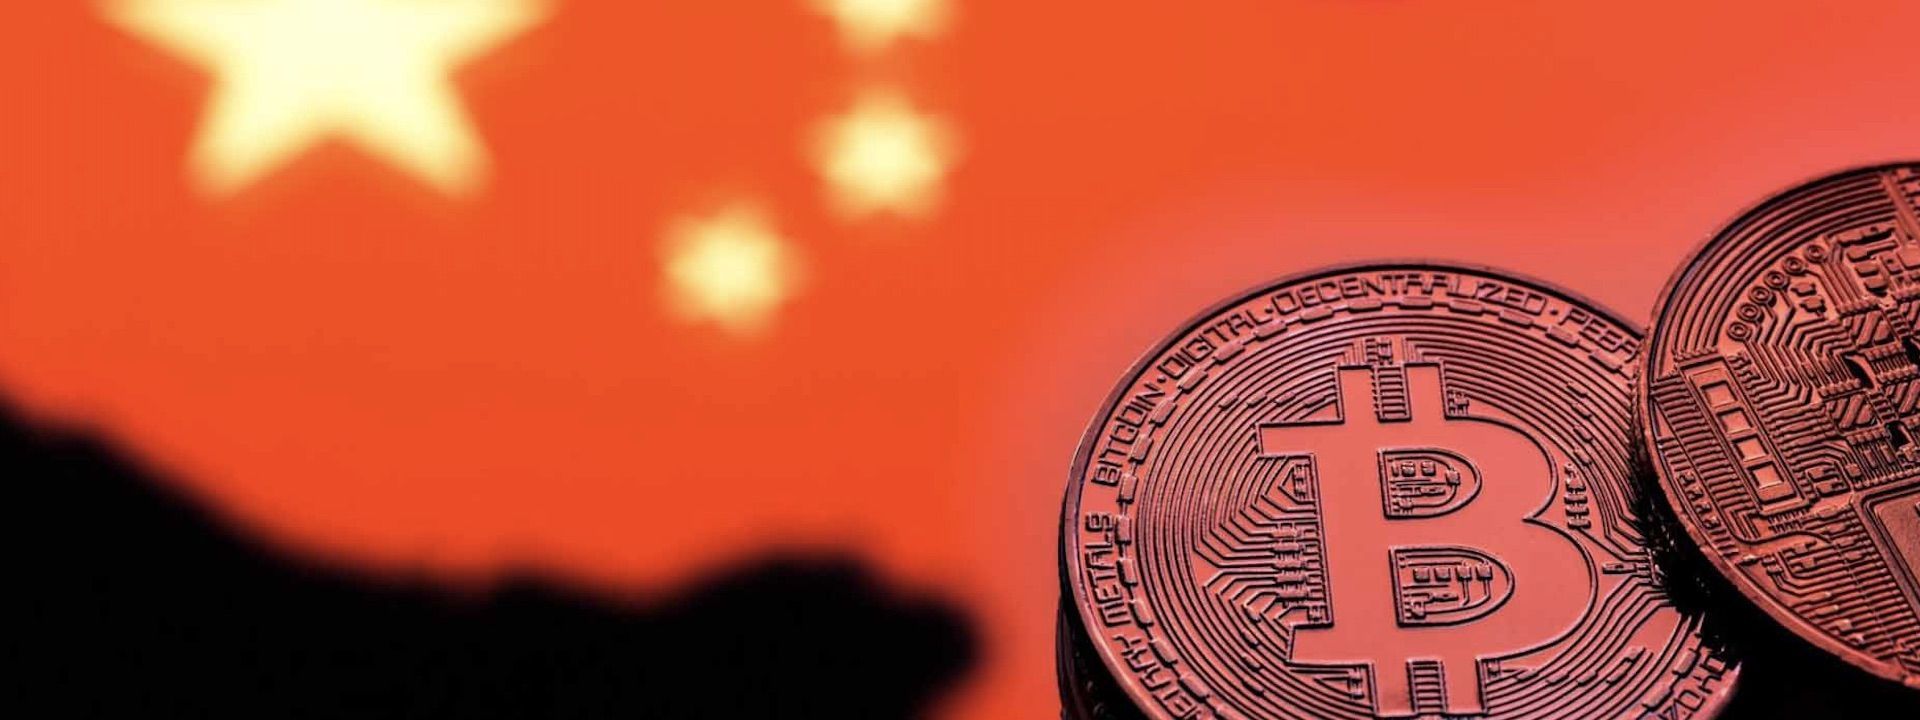 Chiến tranh thương mại Mỹ Trung: Trung Quốc có nên phát hành đồng crypto mới để đối đầu?